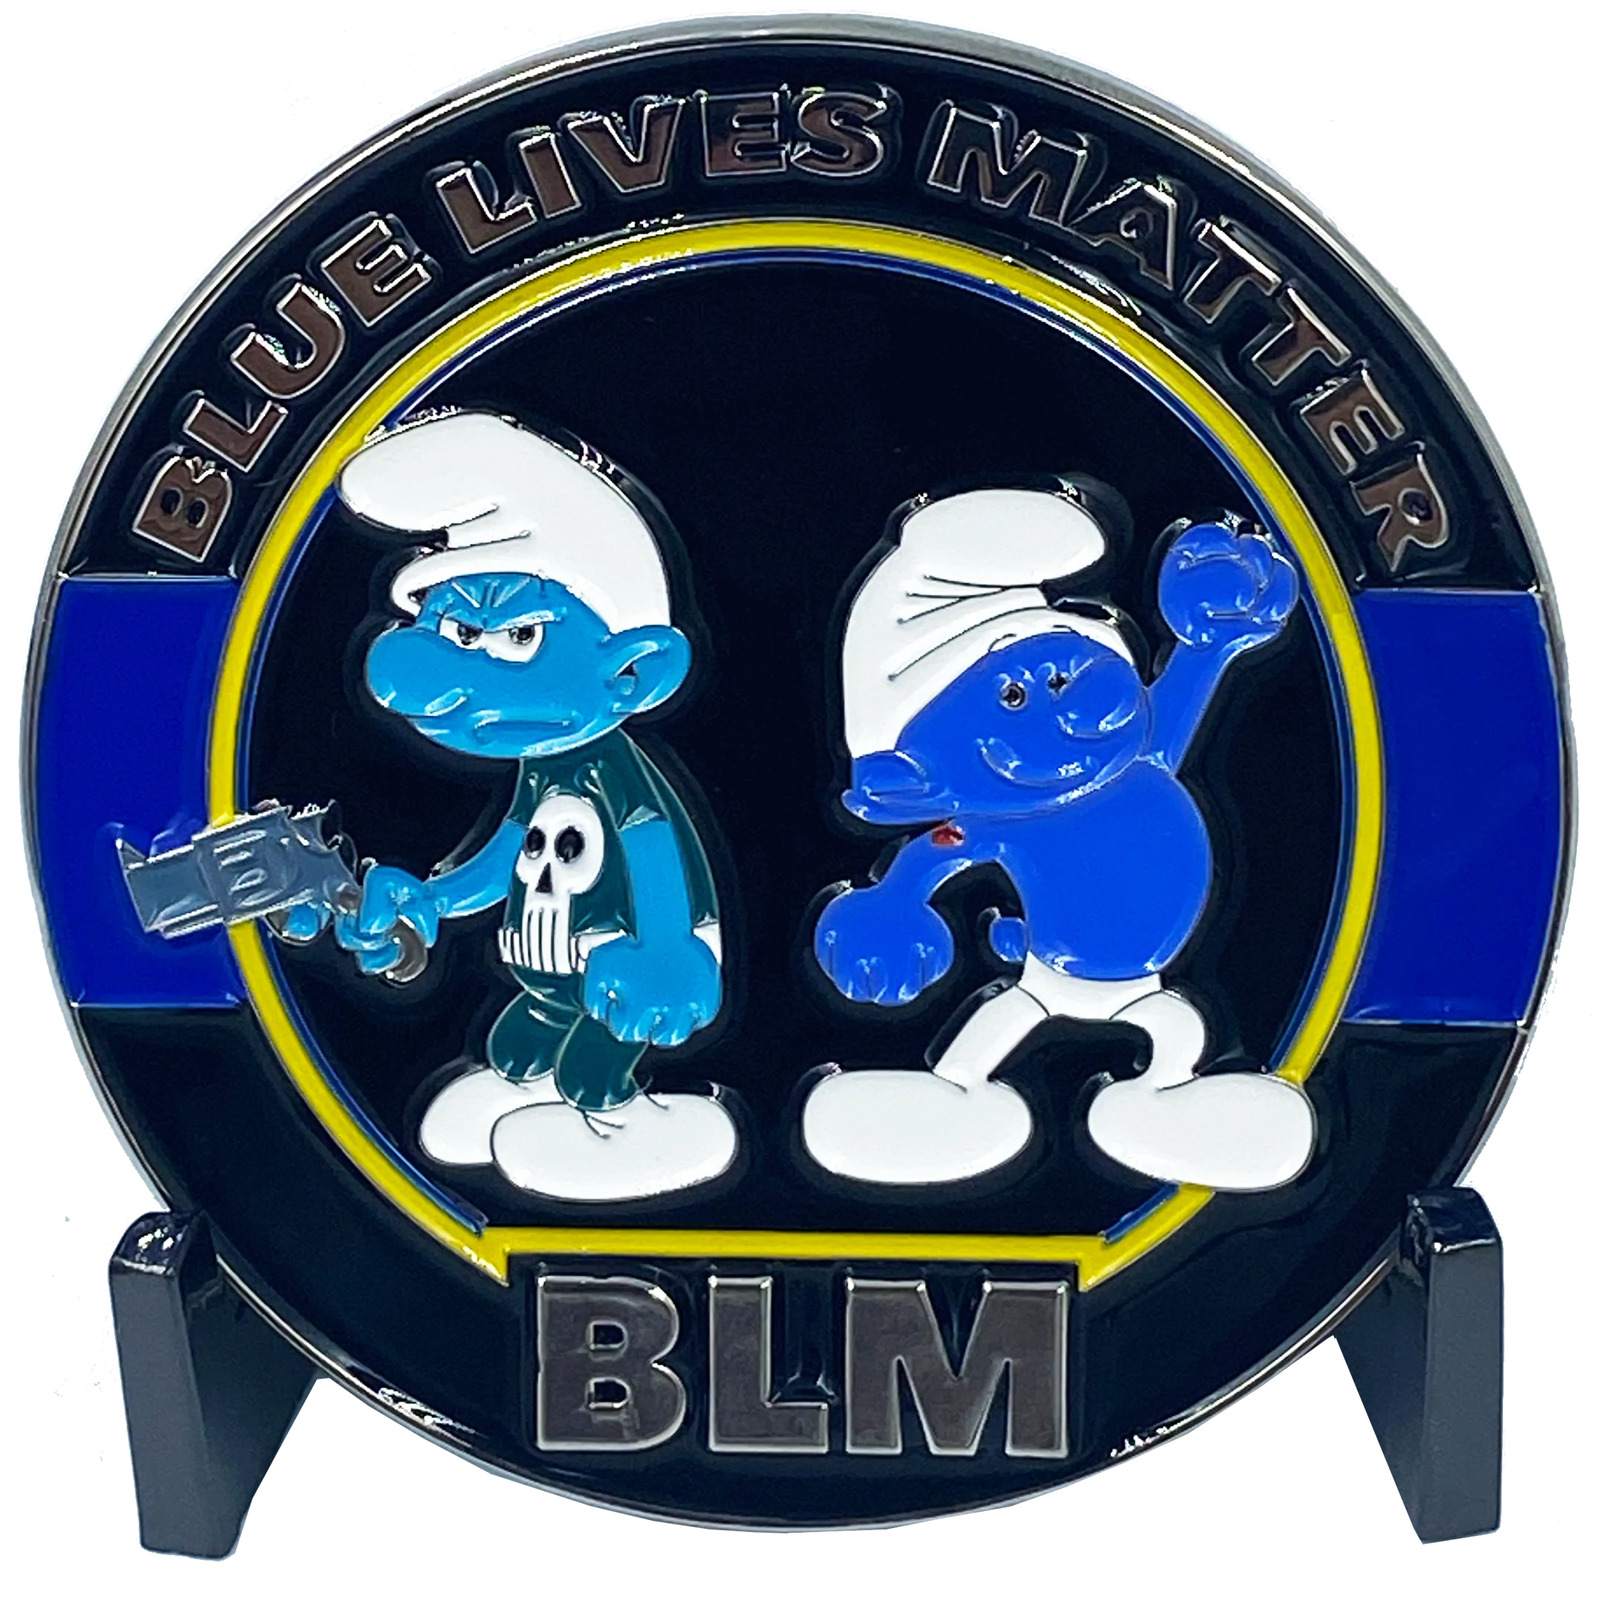 DL4-13 Blue Lives Matter Thin Blue Line Challenge Coin Police LEO 1st Responder